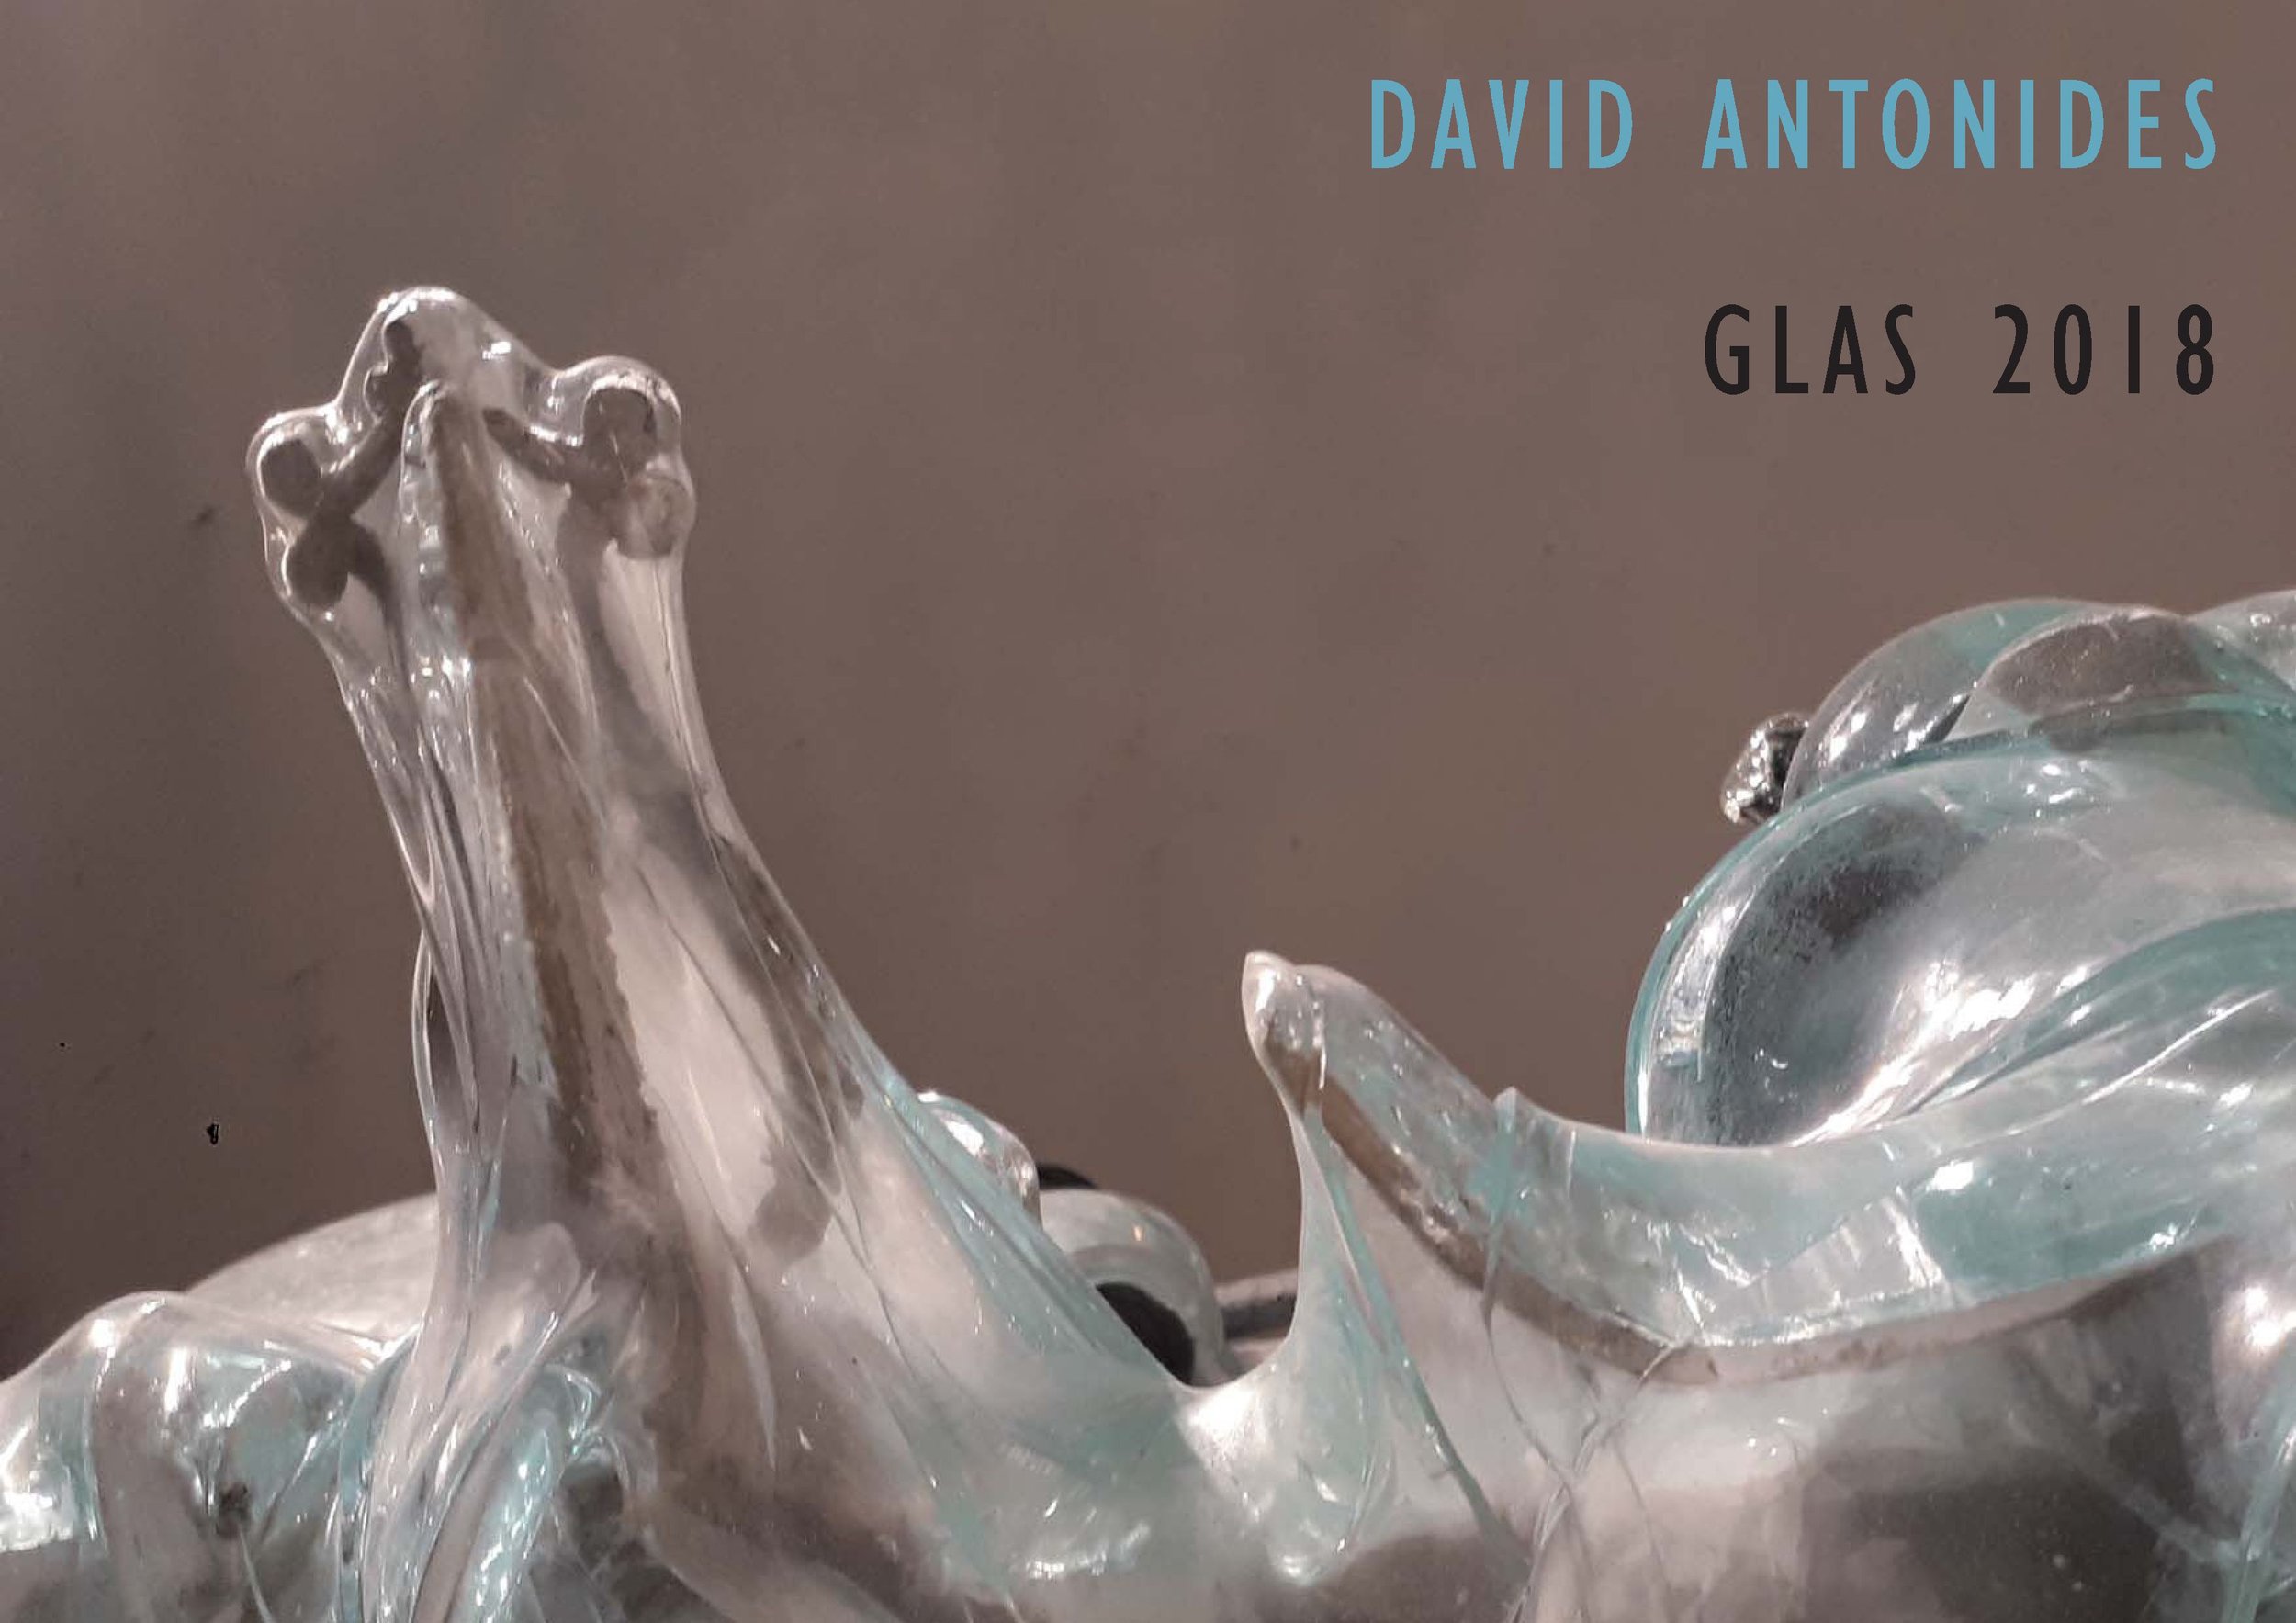 Portfolio Glas 2018 - David Antonides_01.jpg